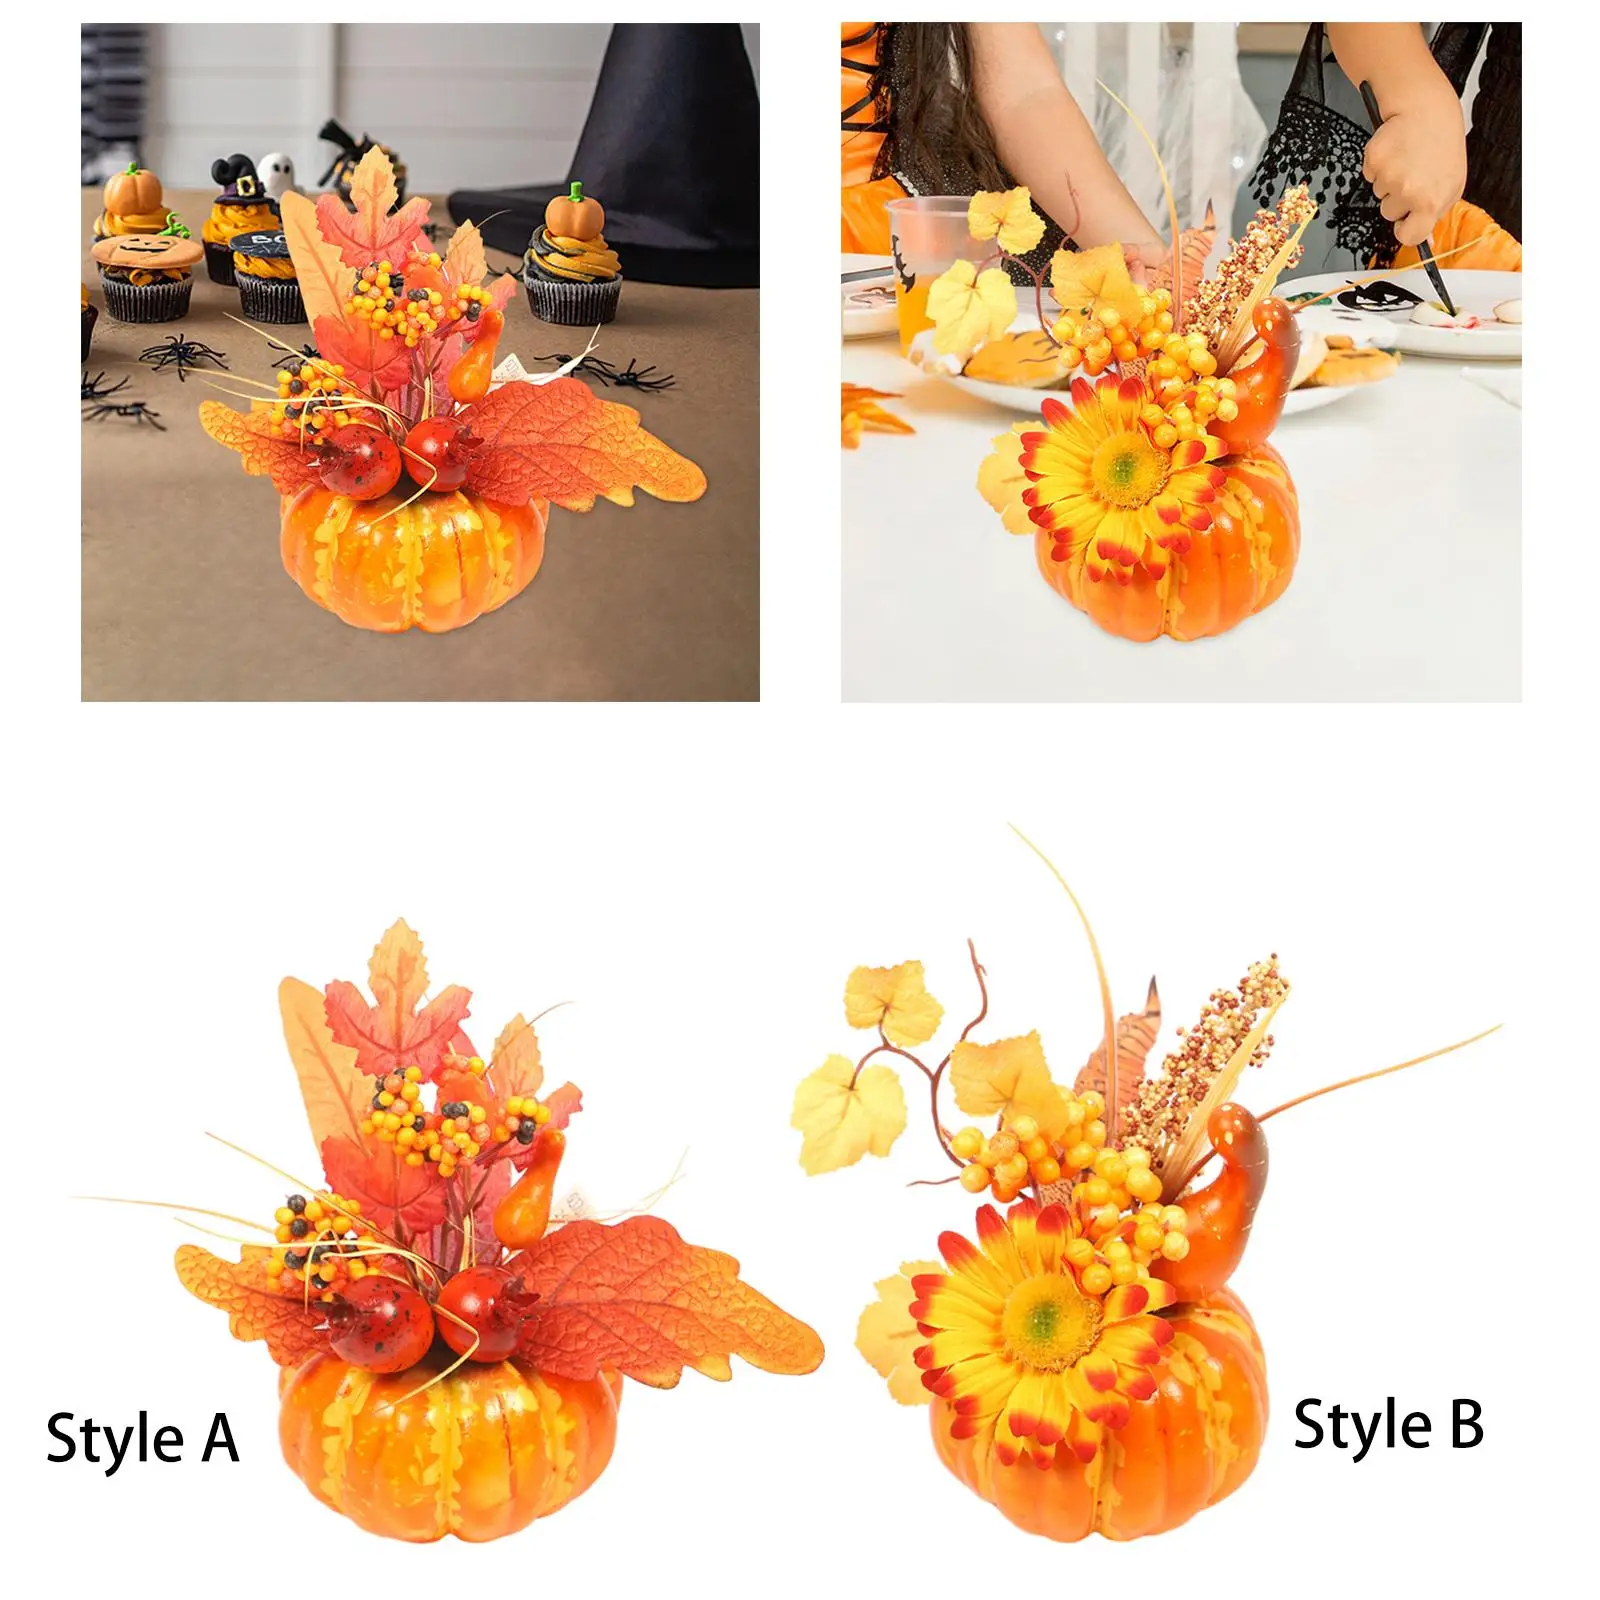 Artificial Pumpkins Decoration Photography Prop Basket Filler Foam Pumpkin for Dinner Table Fireplace Kitchen Halloween Decor